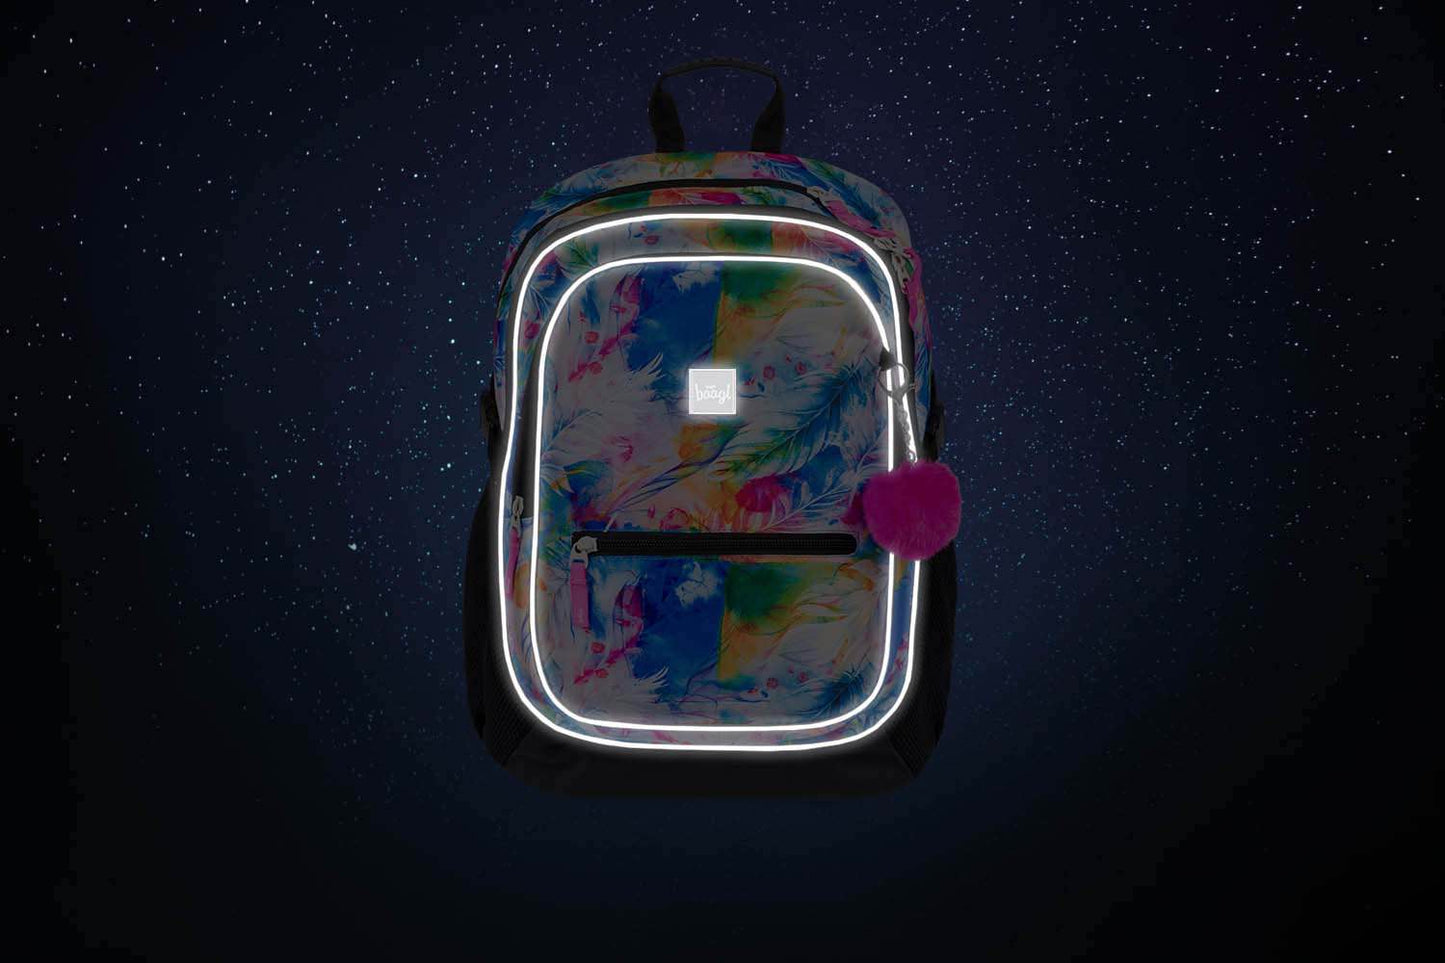 Školský batoh Core Akvarel